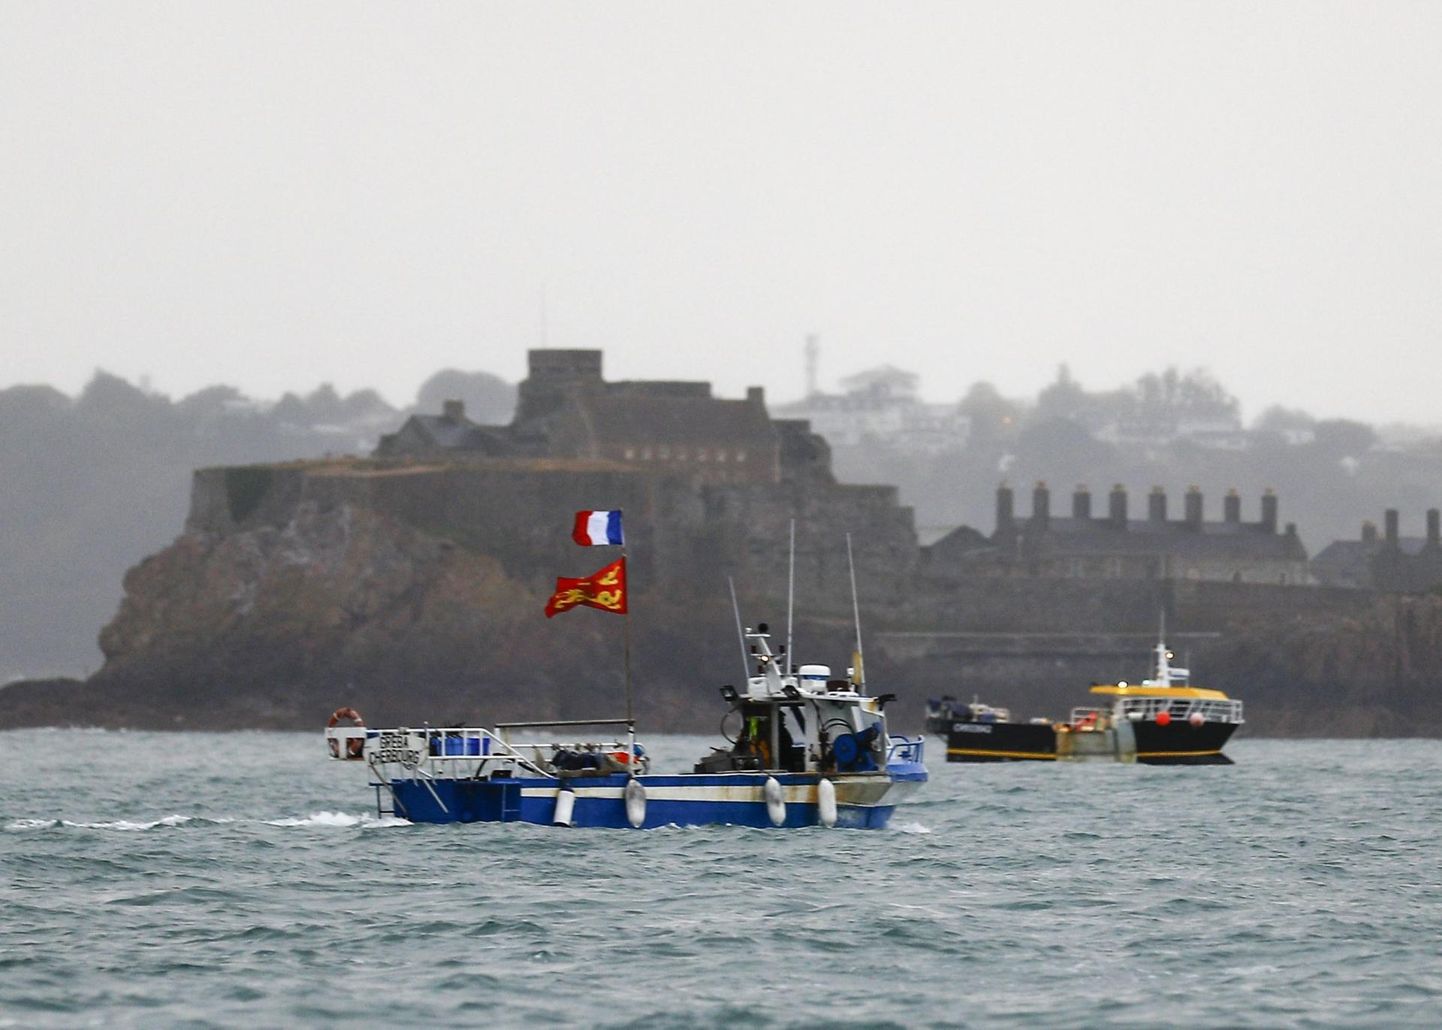 Prantsuse kalalaev Jersey saare pealinna Saint Helieri lähedal 6. mail 2021. Vastasseis jätkub ka novembris.